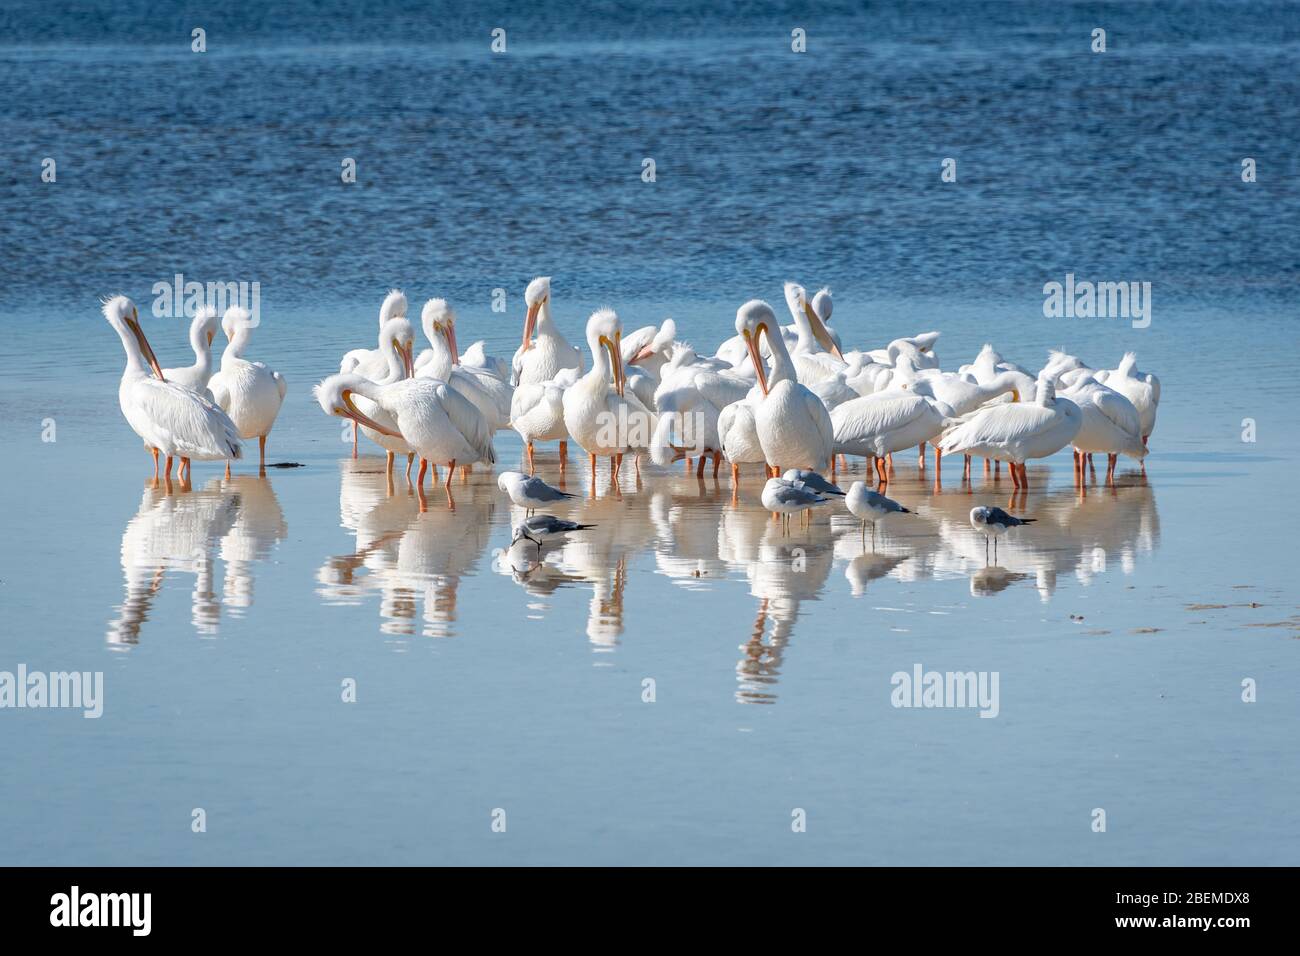 Gruppe von weißen Pelikanen predigen Federn in flachem Wasser mit Reflexionen. Ding Darling Wildife Refuge, Sanibel Island, im Winter im Westen Floridas. Stockfoto